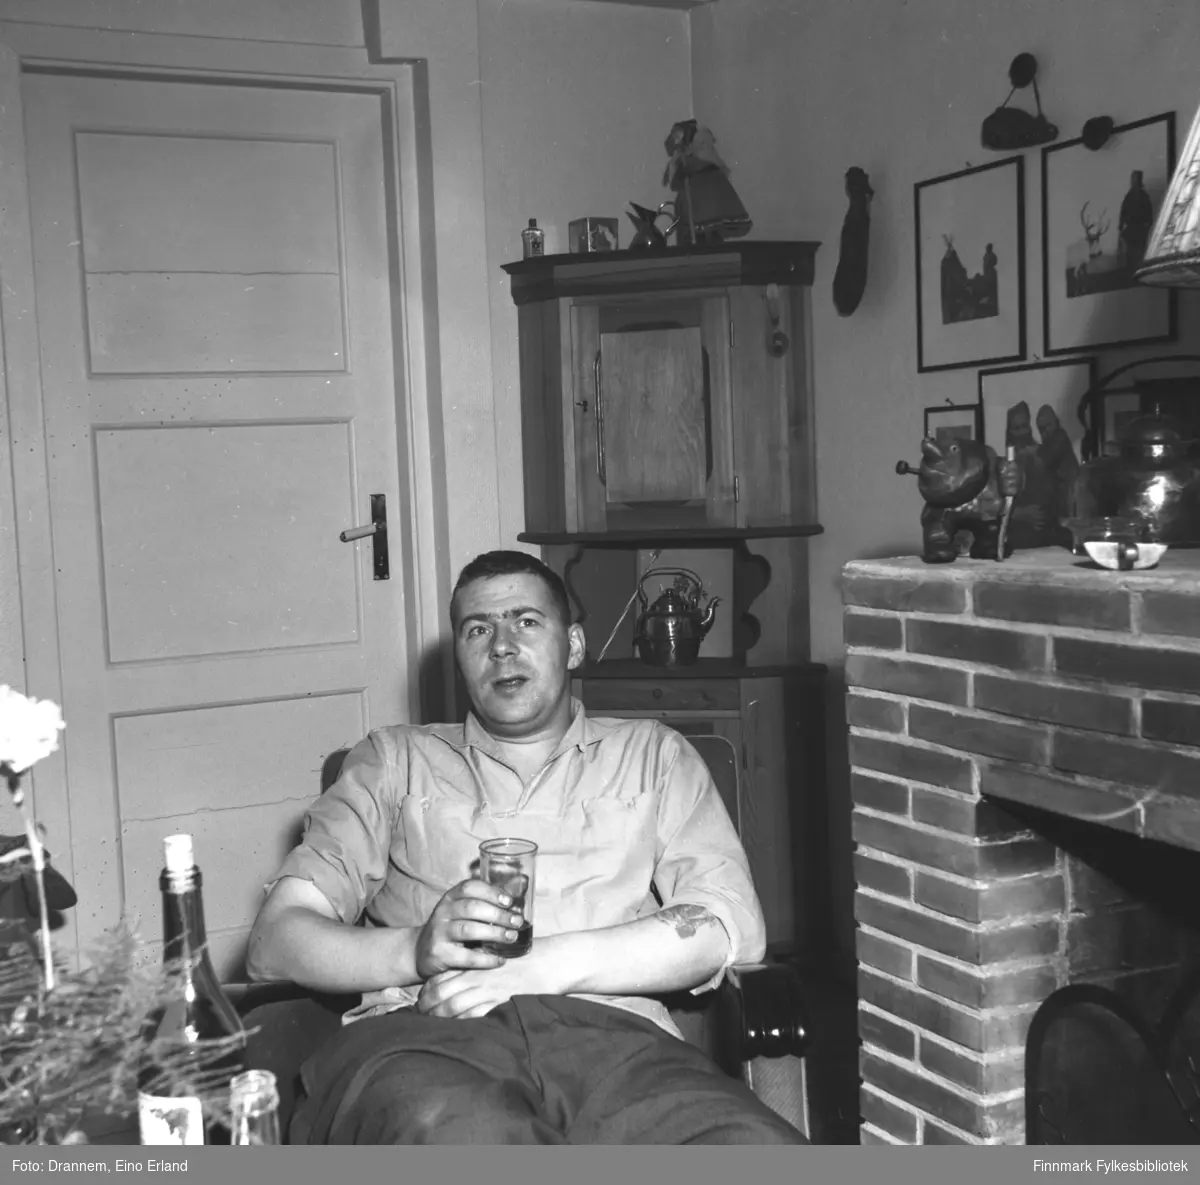 En mann sitter i en lenestol glass i hånden